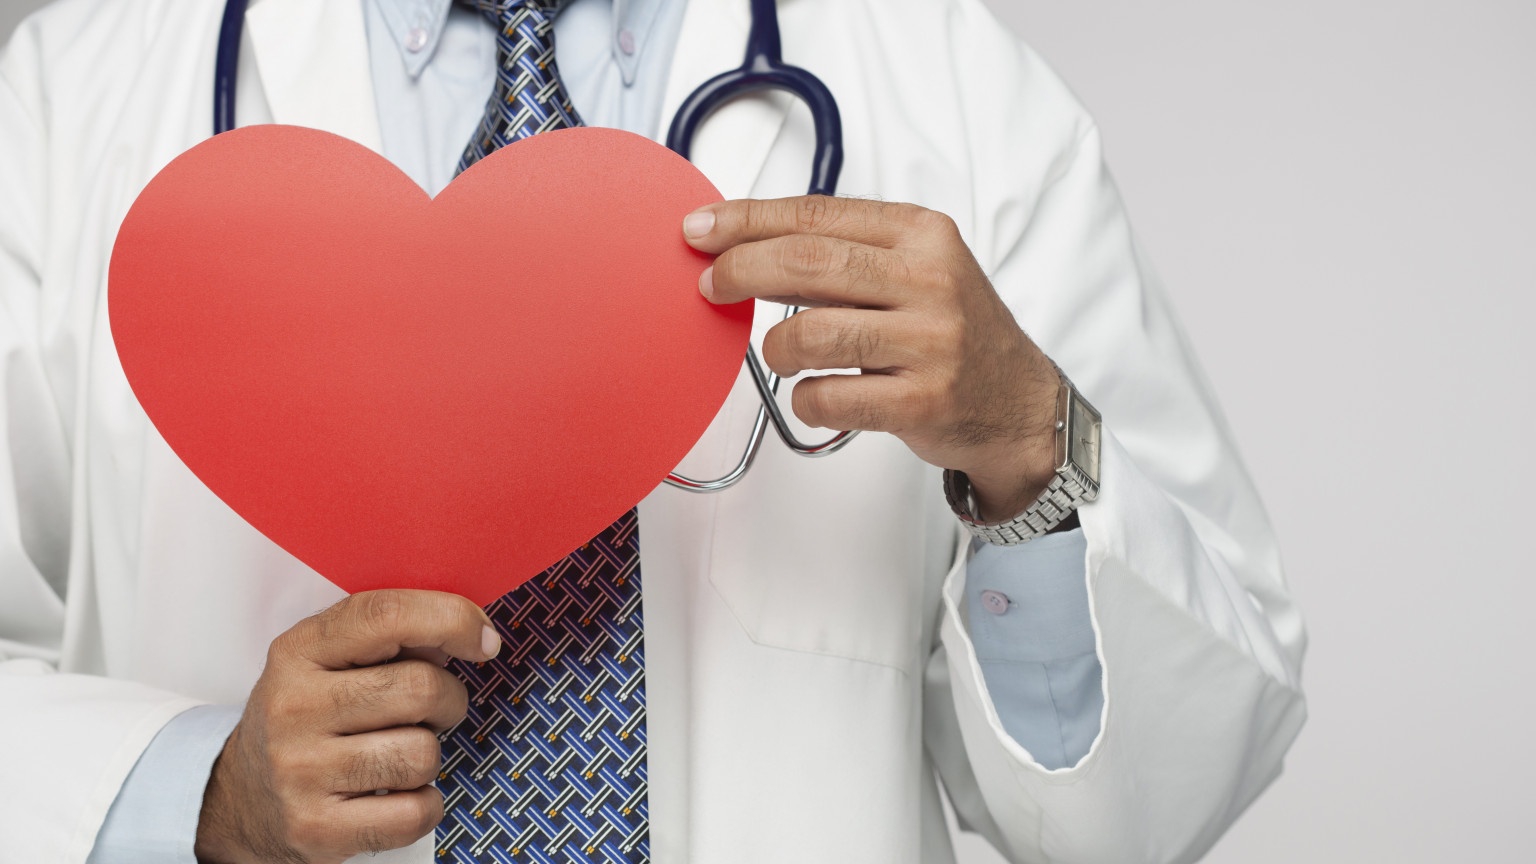 Thuốc chống loạn nhịp có thể góp phần giảm nhịp tim nhanh như thế nào?
